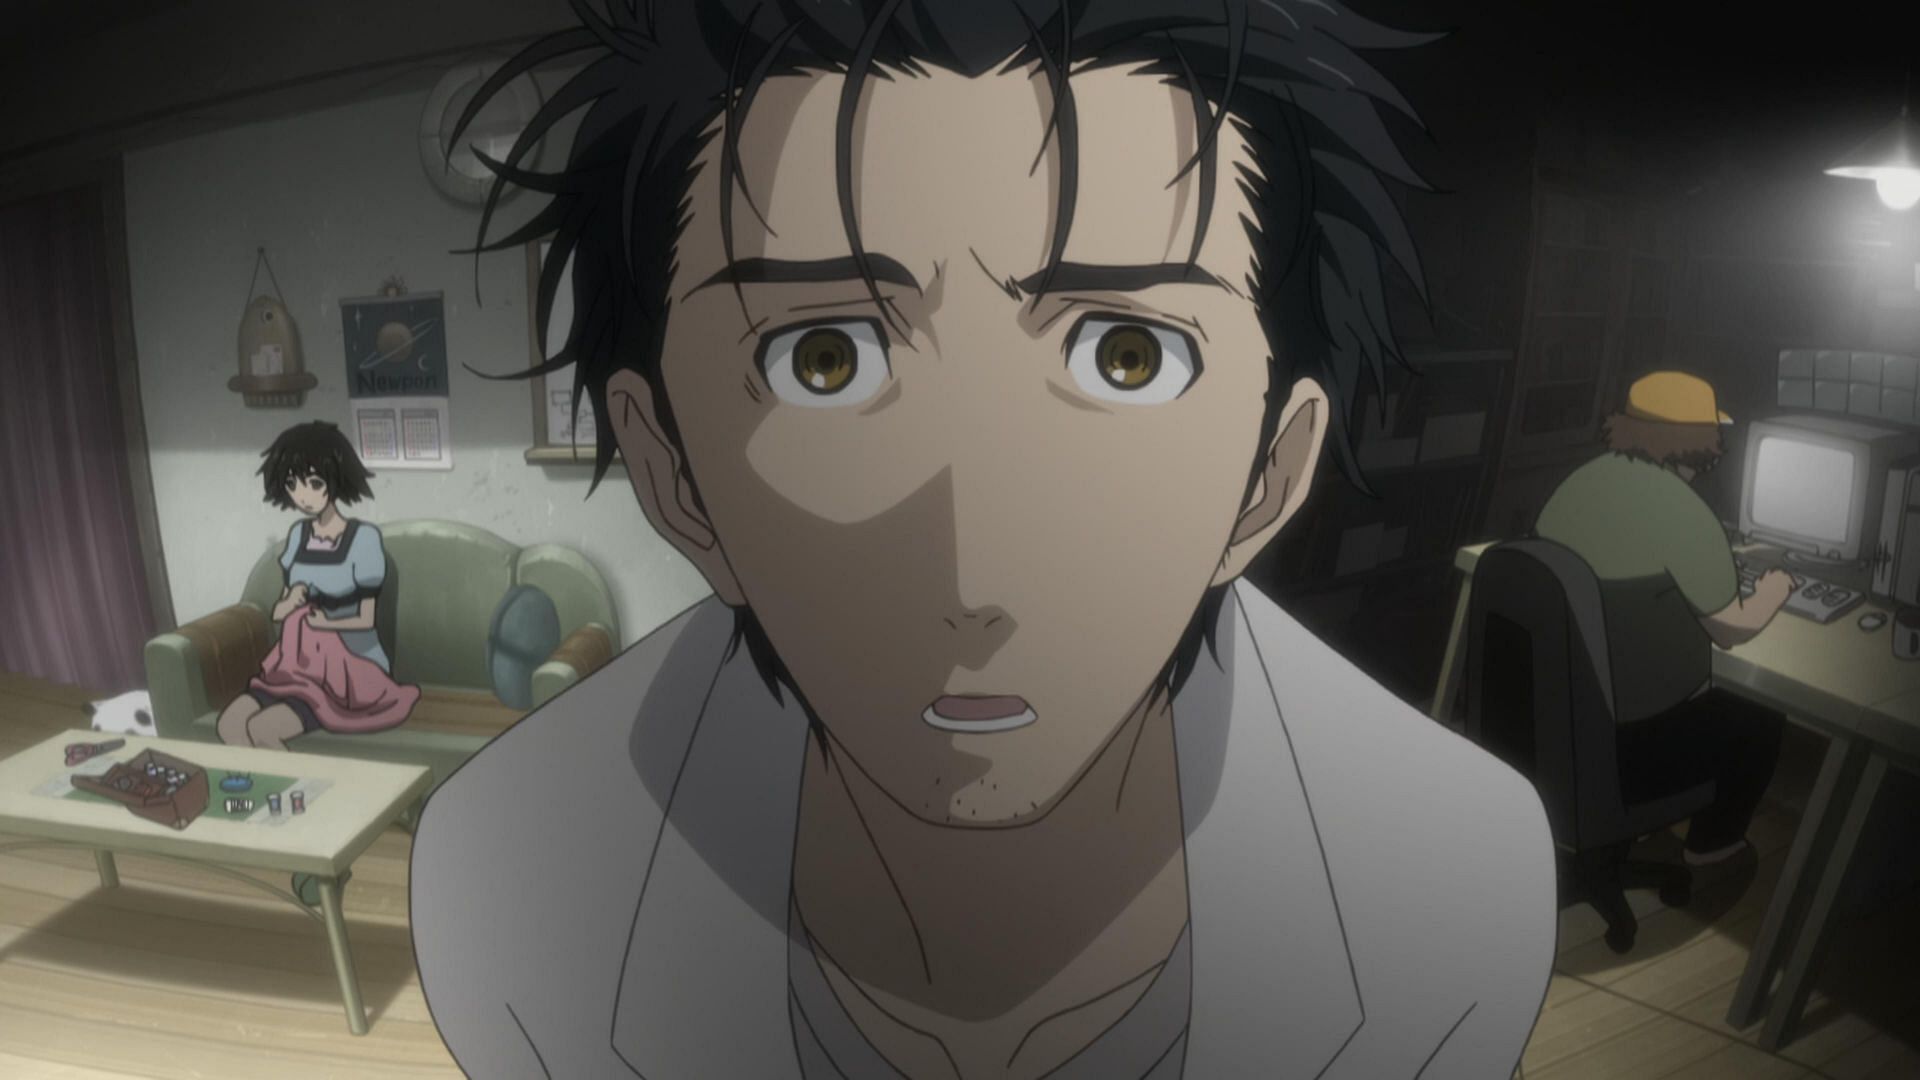 Okabe Rintaro as seen in the anime series (Image via Studio White Fox)